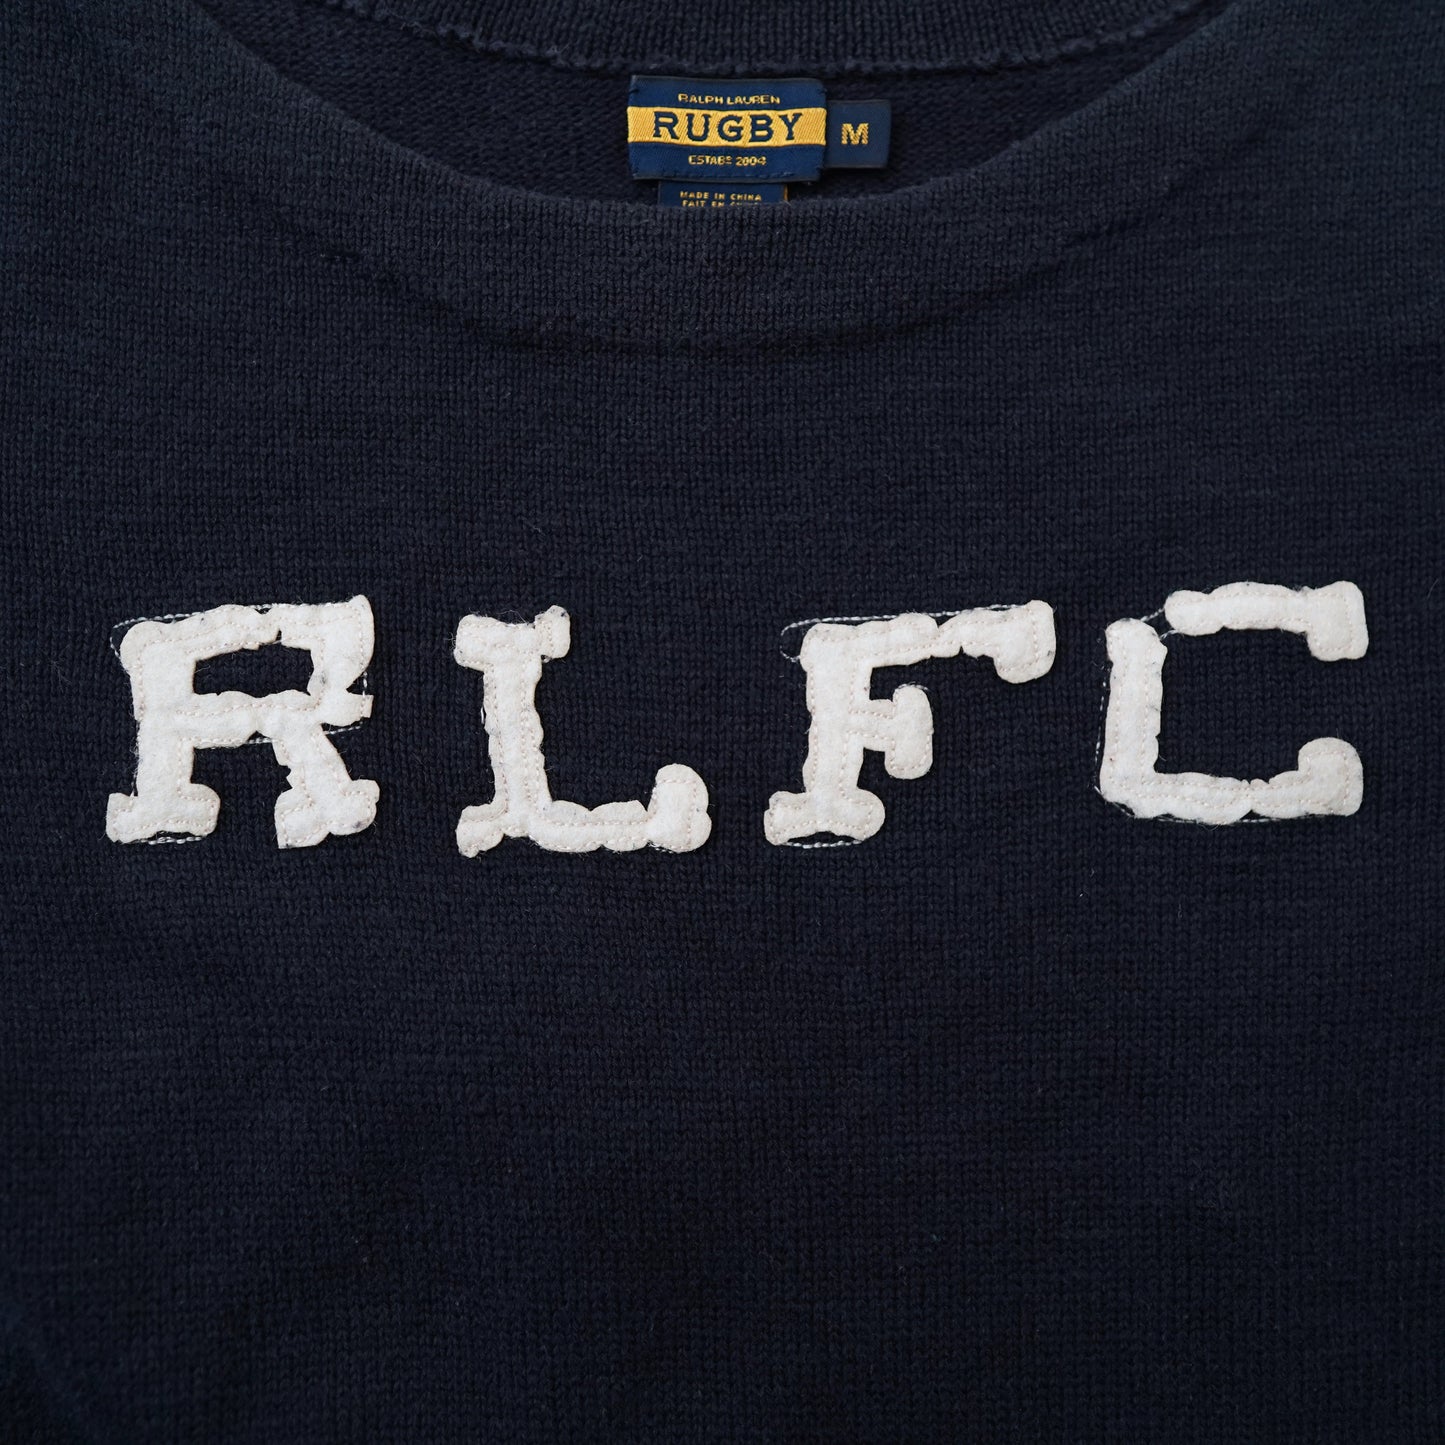 Rugby Ralph Lauren knit one piece